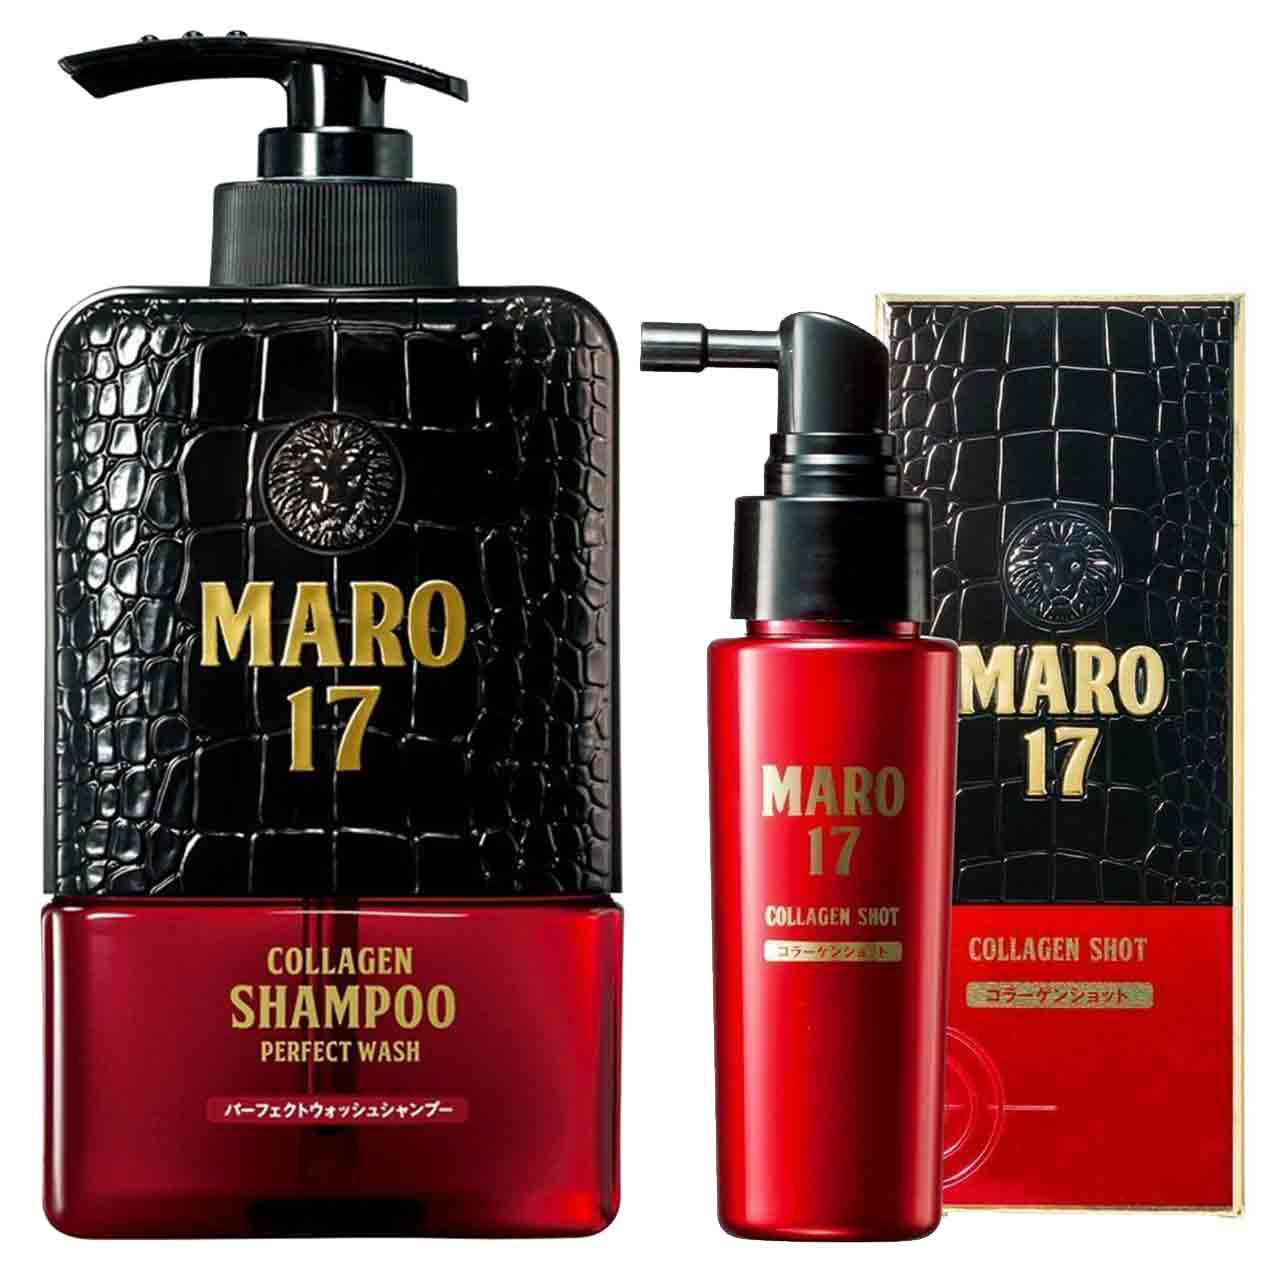 MARO17 Collagen Shampoo Perfect Wash & Collagen Shot Set